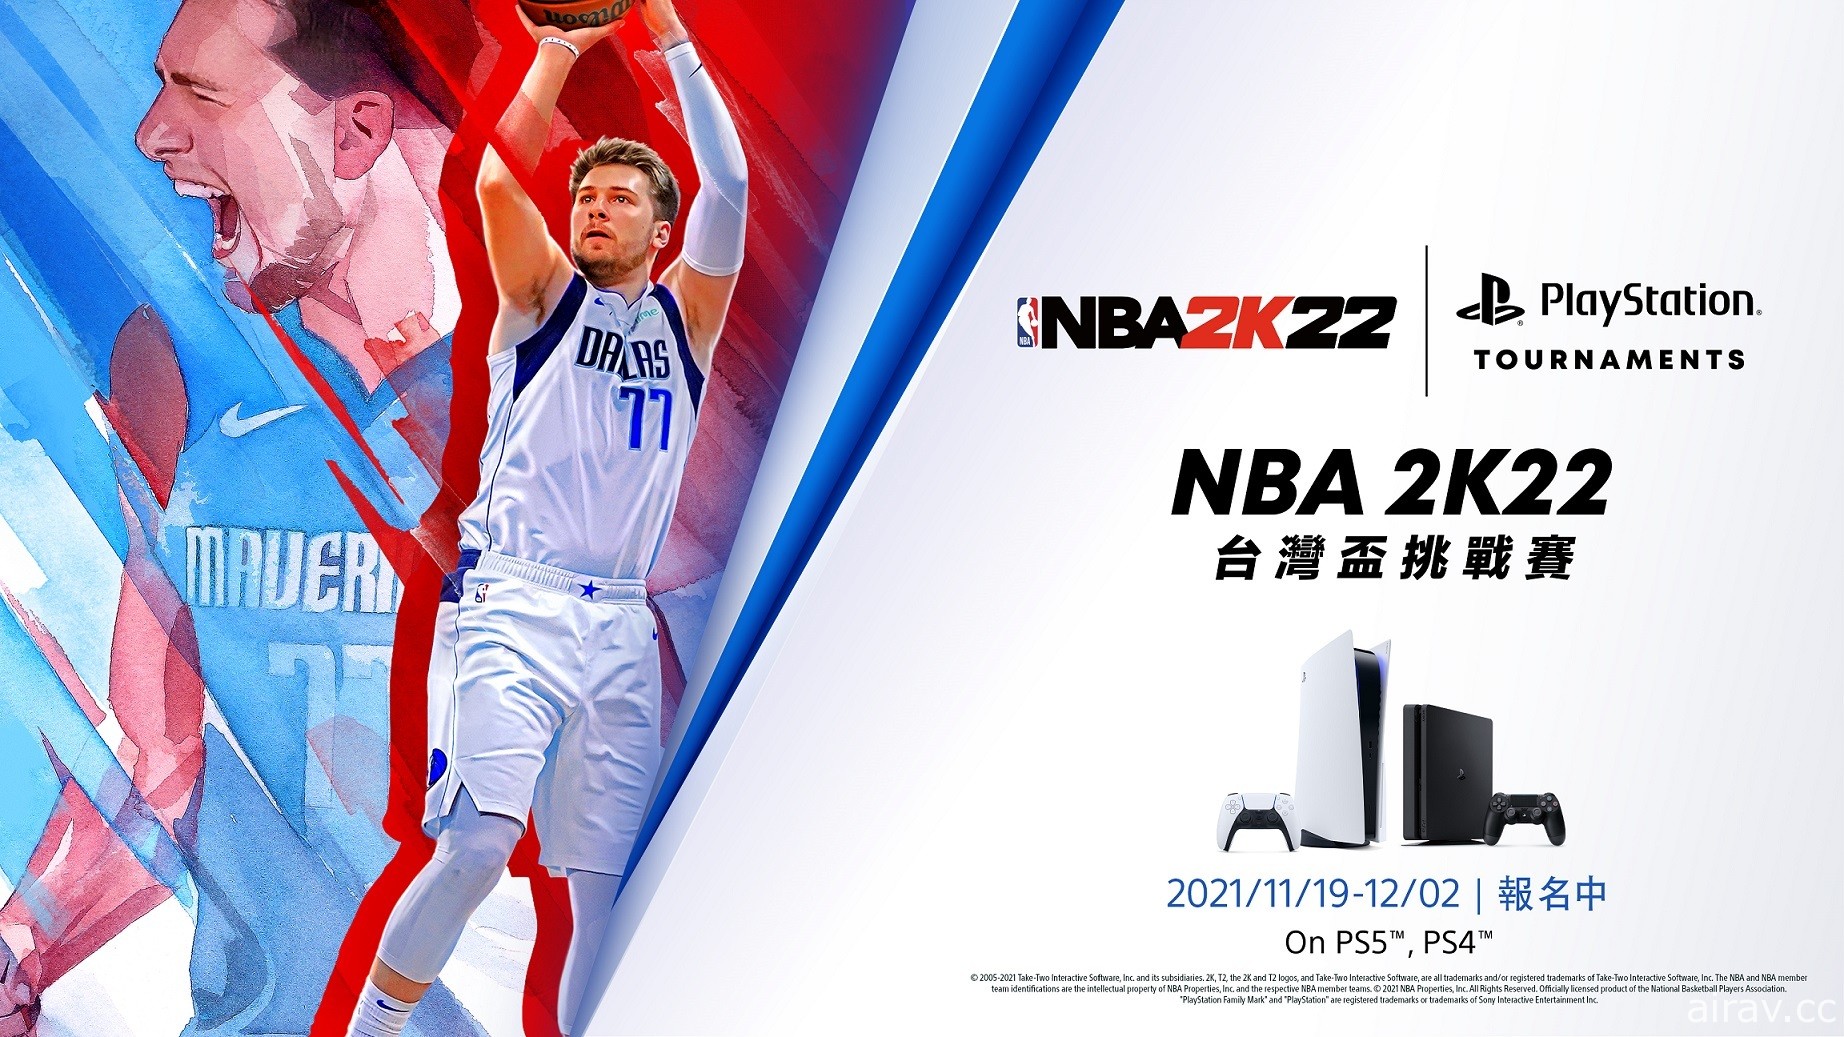 PS5 / PS4《NBA 2K22》台灣盃挑戰賽即日開放報名 冠軍獎金 2 萬元